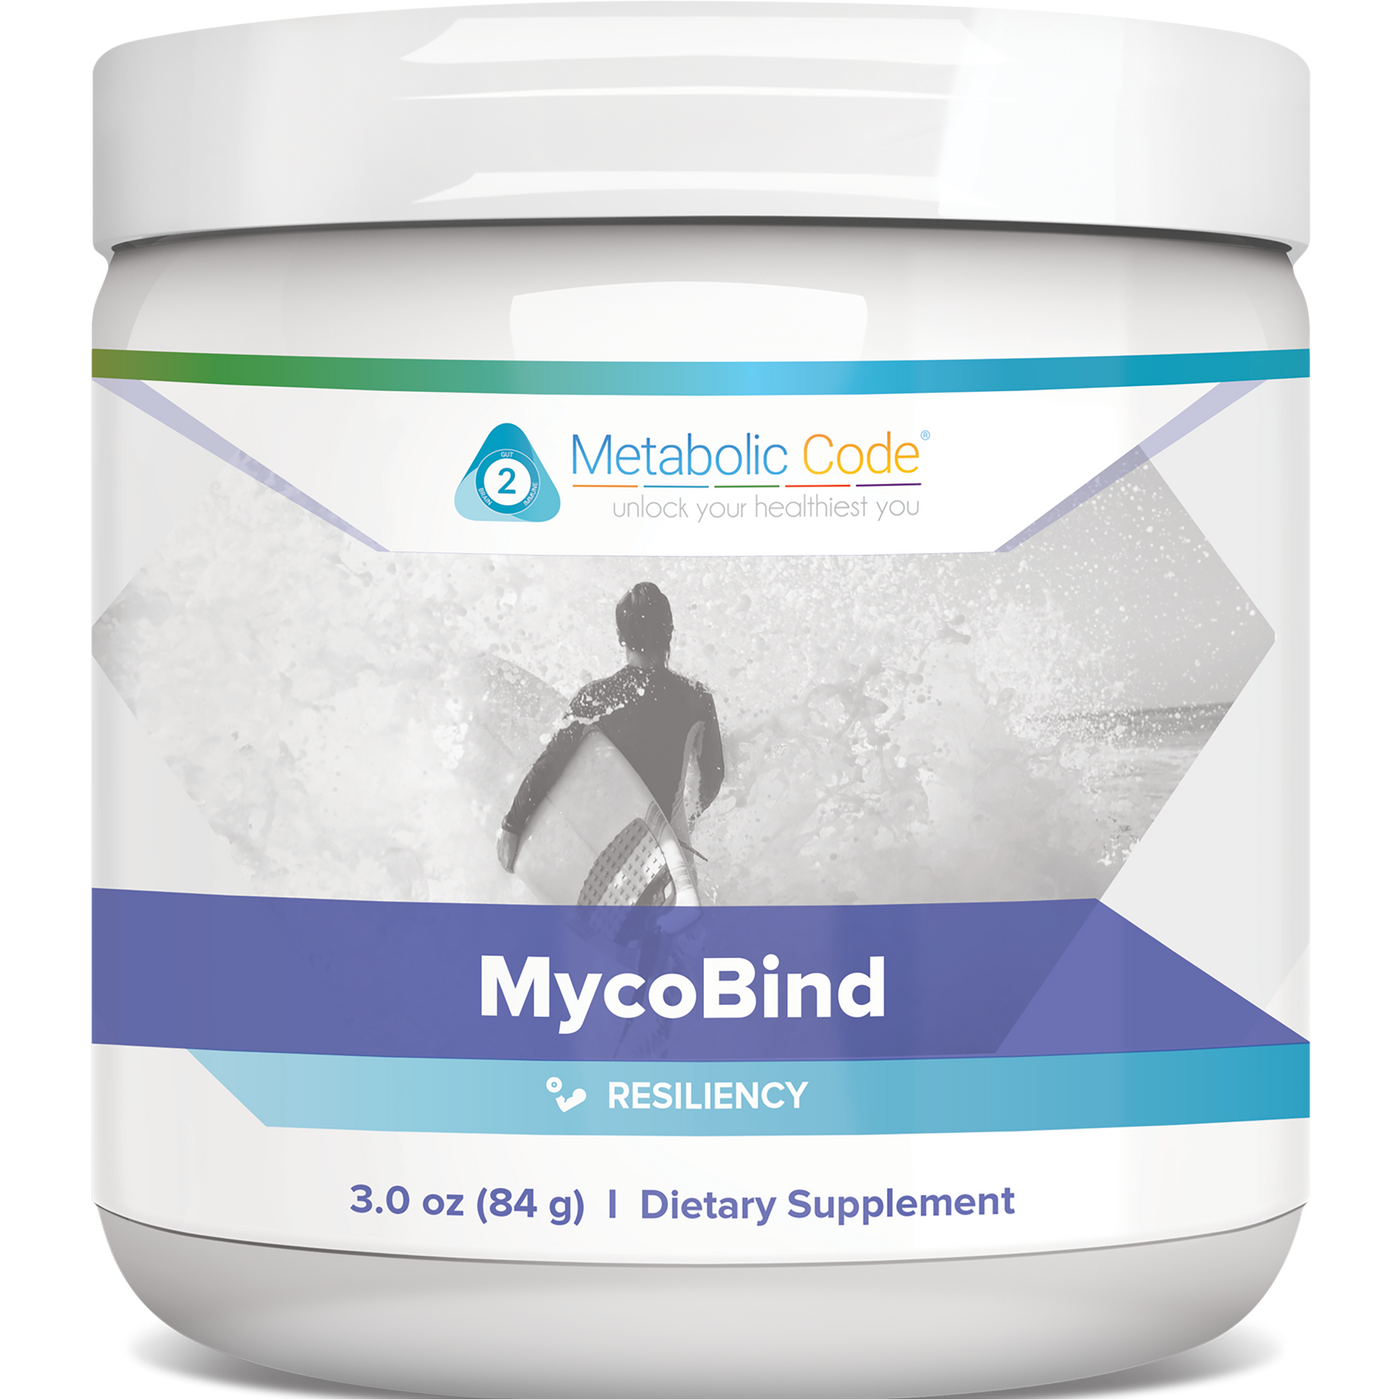 MycoBind 3.0 oz Curated Wellness